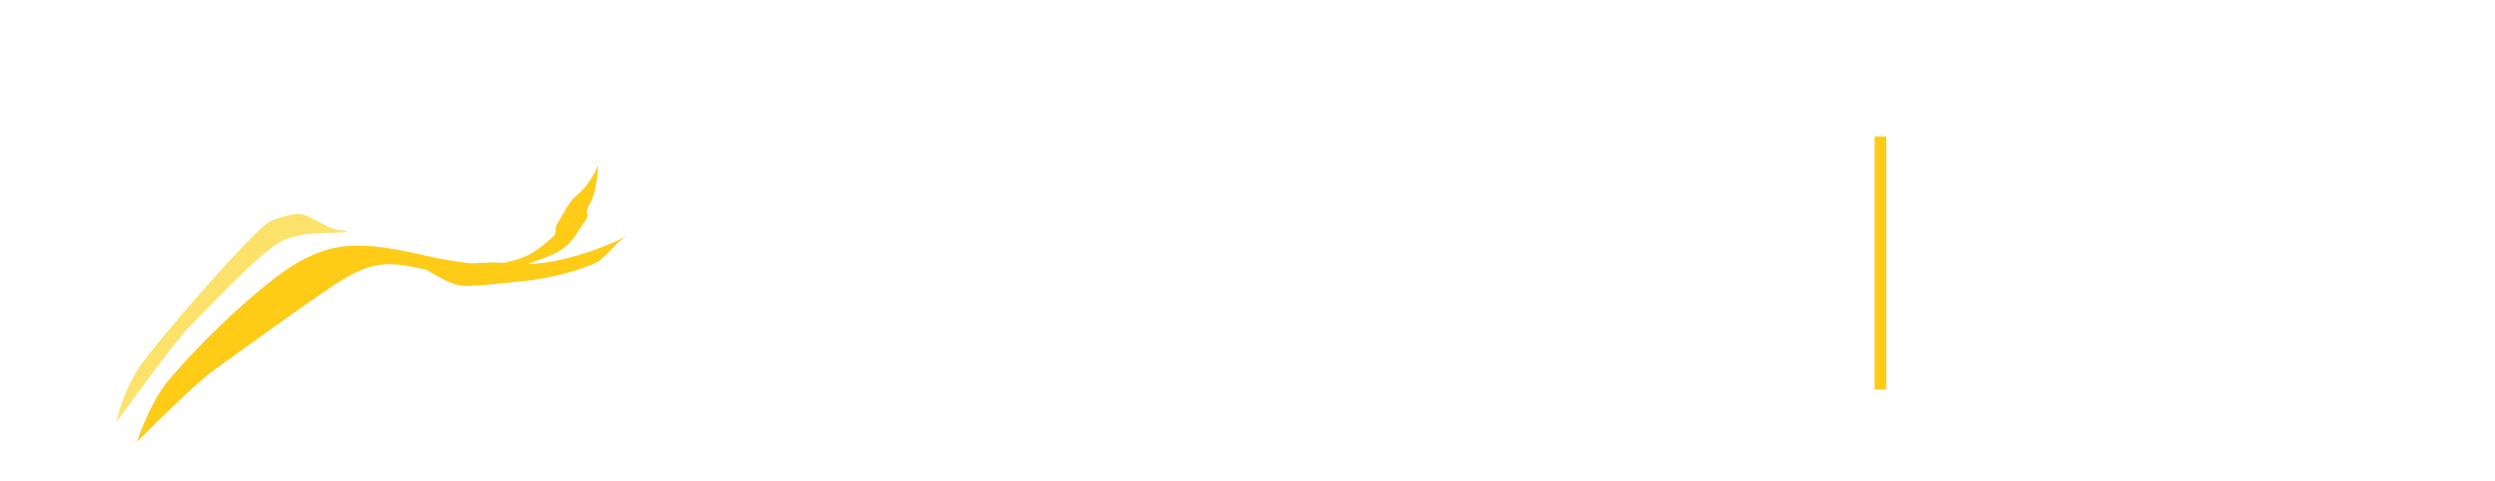 zebra-bw Logo